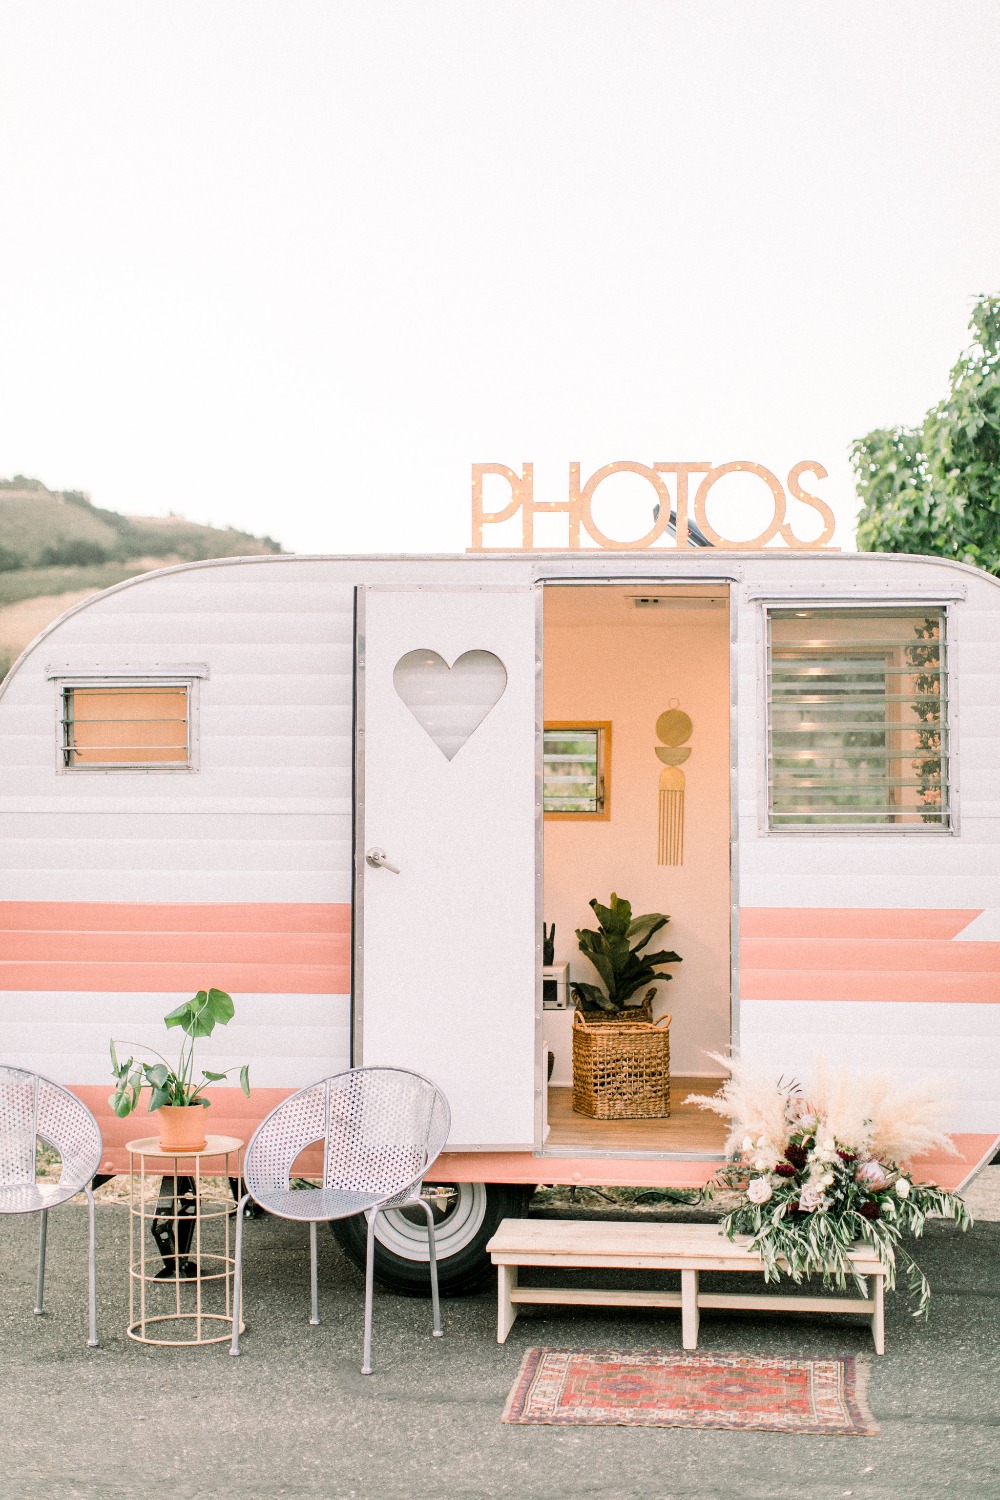 cute little camper photo booth